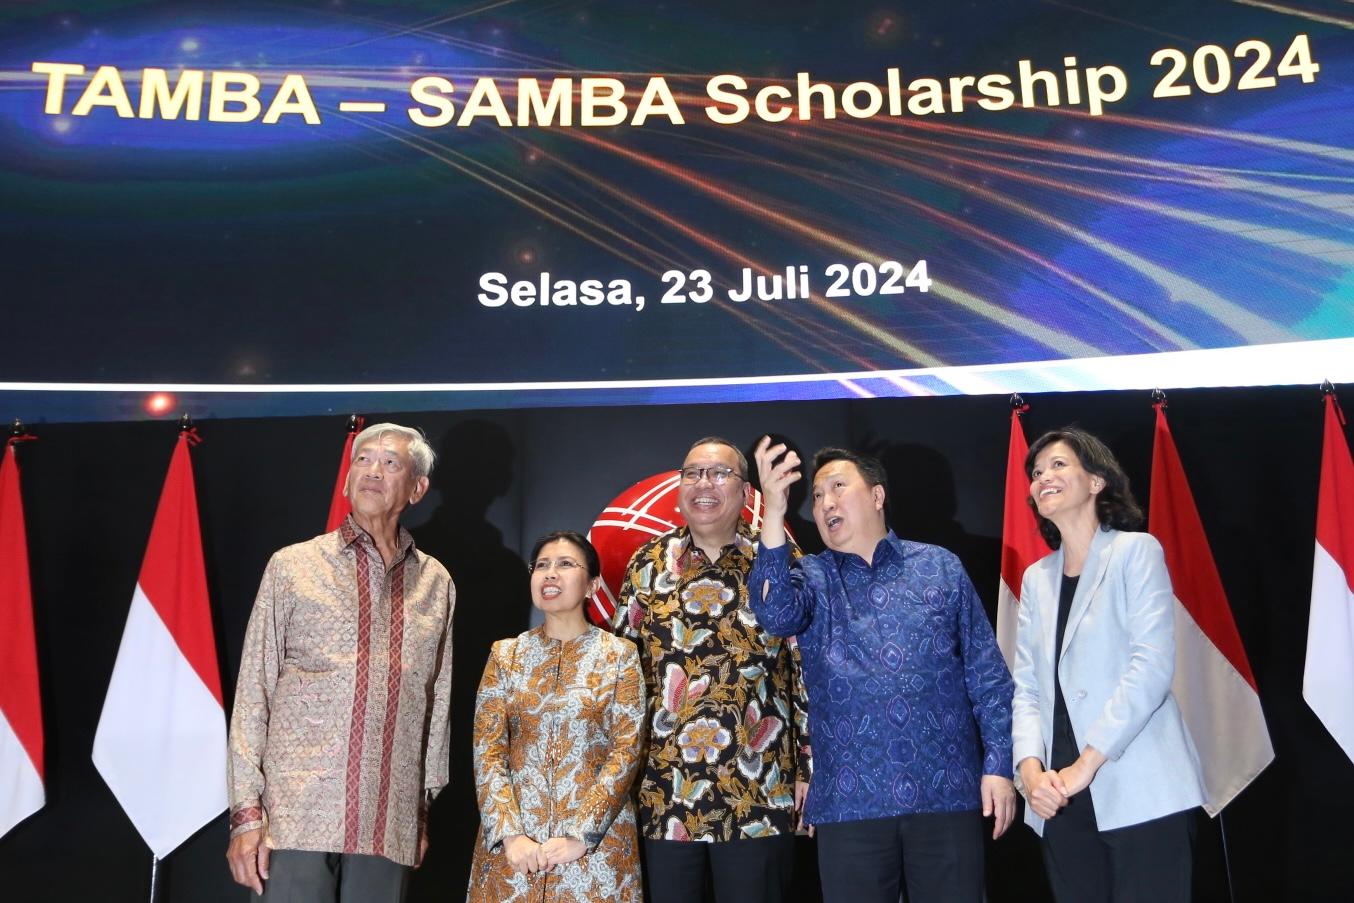 Yayasan Mochamad Thohir Undang Karyawan BEI Ikut Seleksi Beasiswa S2 TAMBA & SAMBA